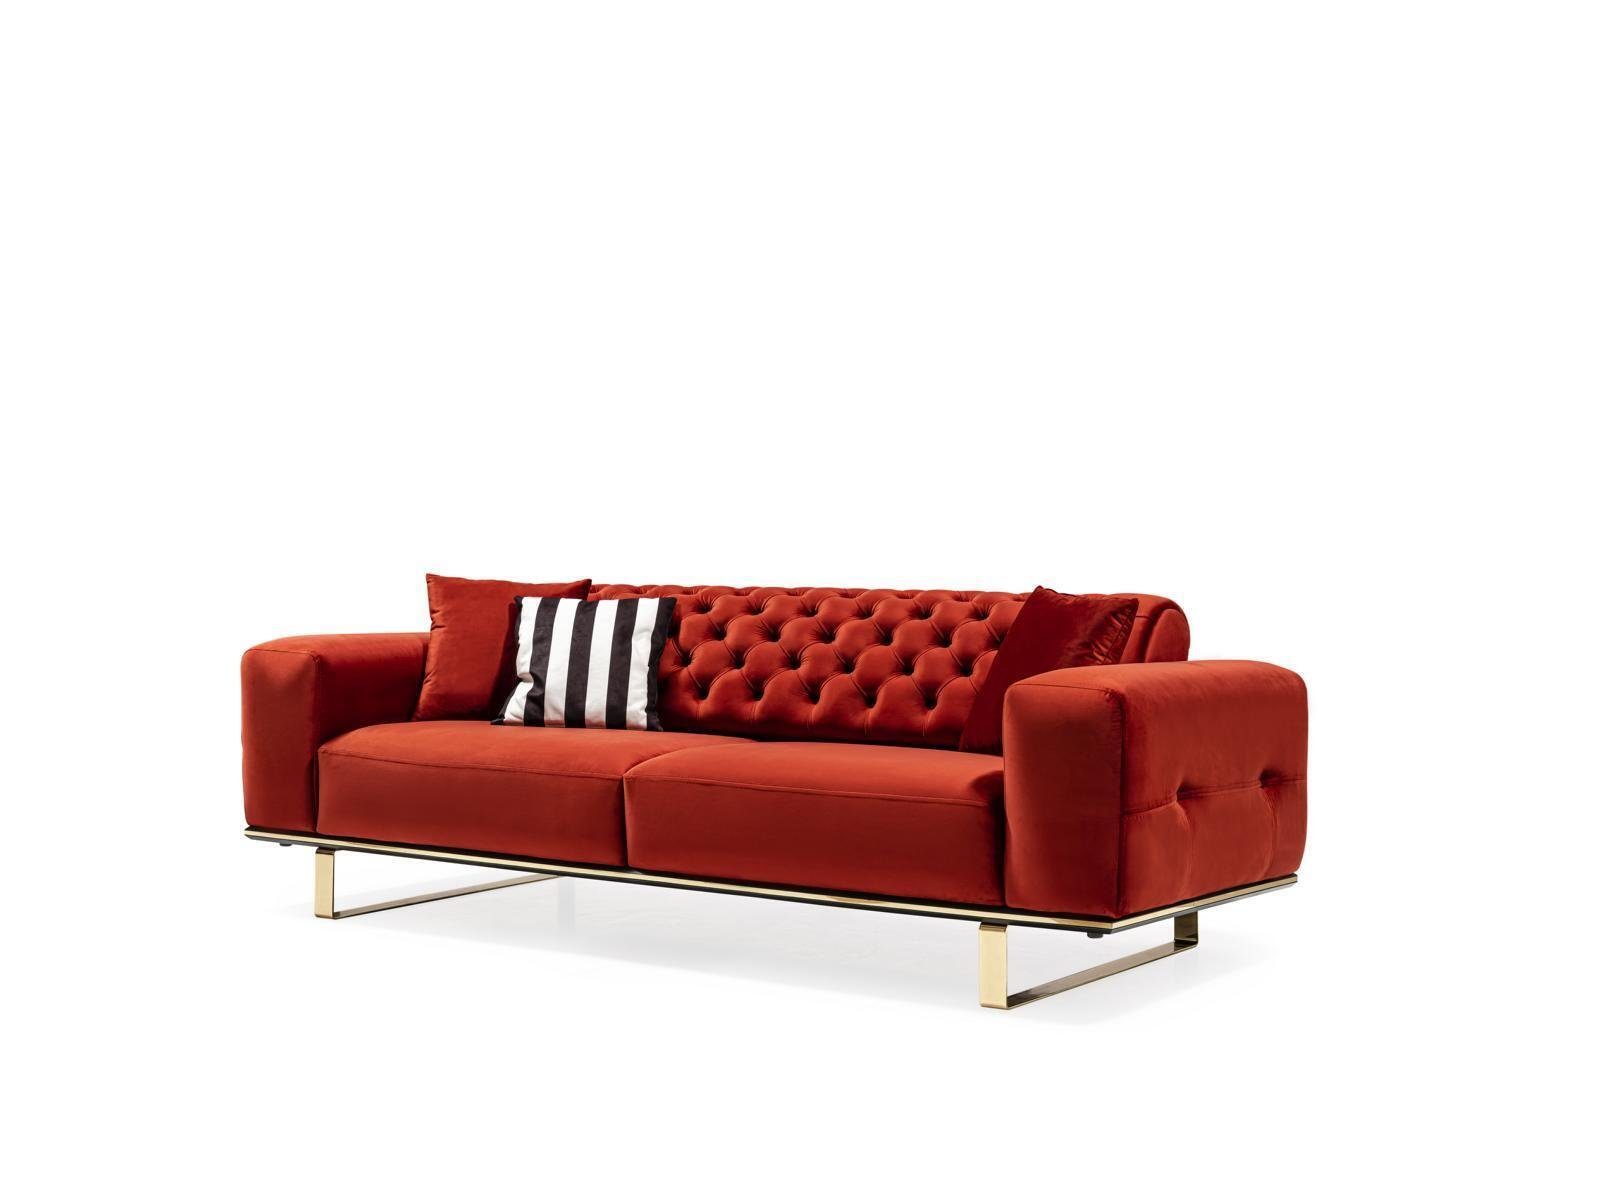 JVmoebel Sofa Dreisitzer Chesterfield Sofa 3 Sitzer Sofas Rot Stoff Wohnzimmer, 1 Teile, Made in Europe